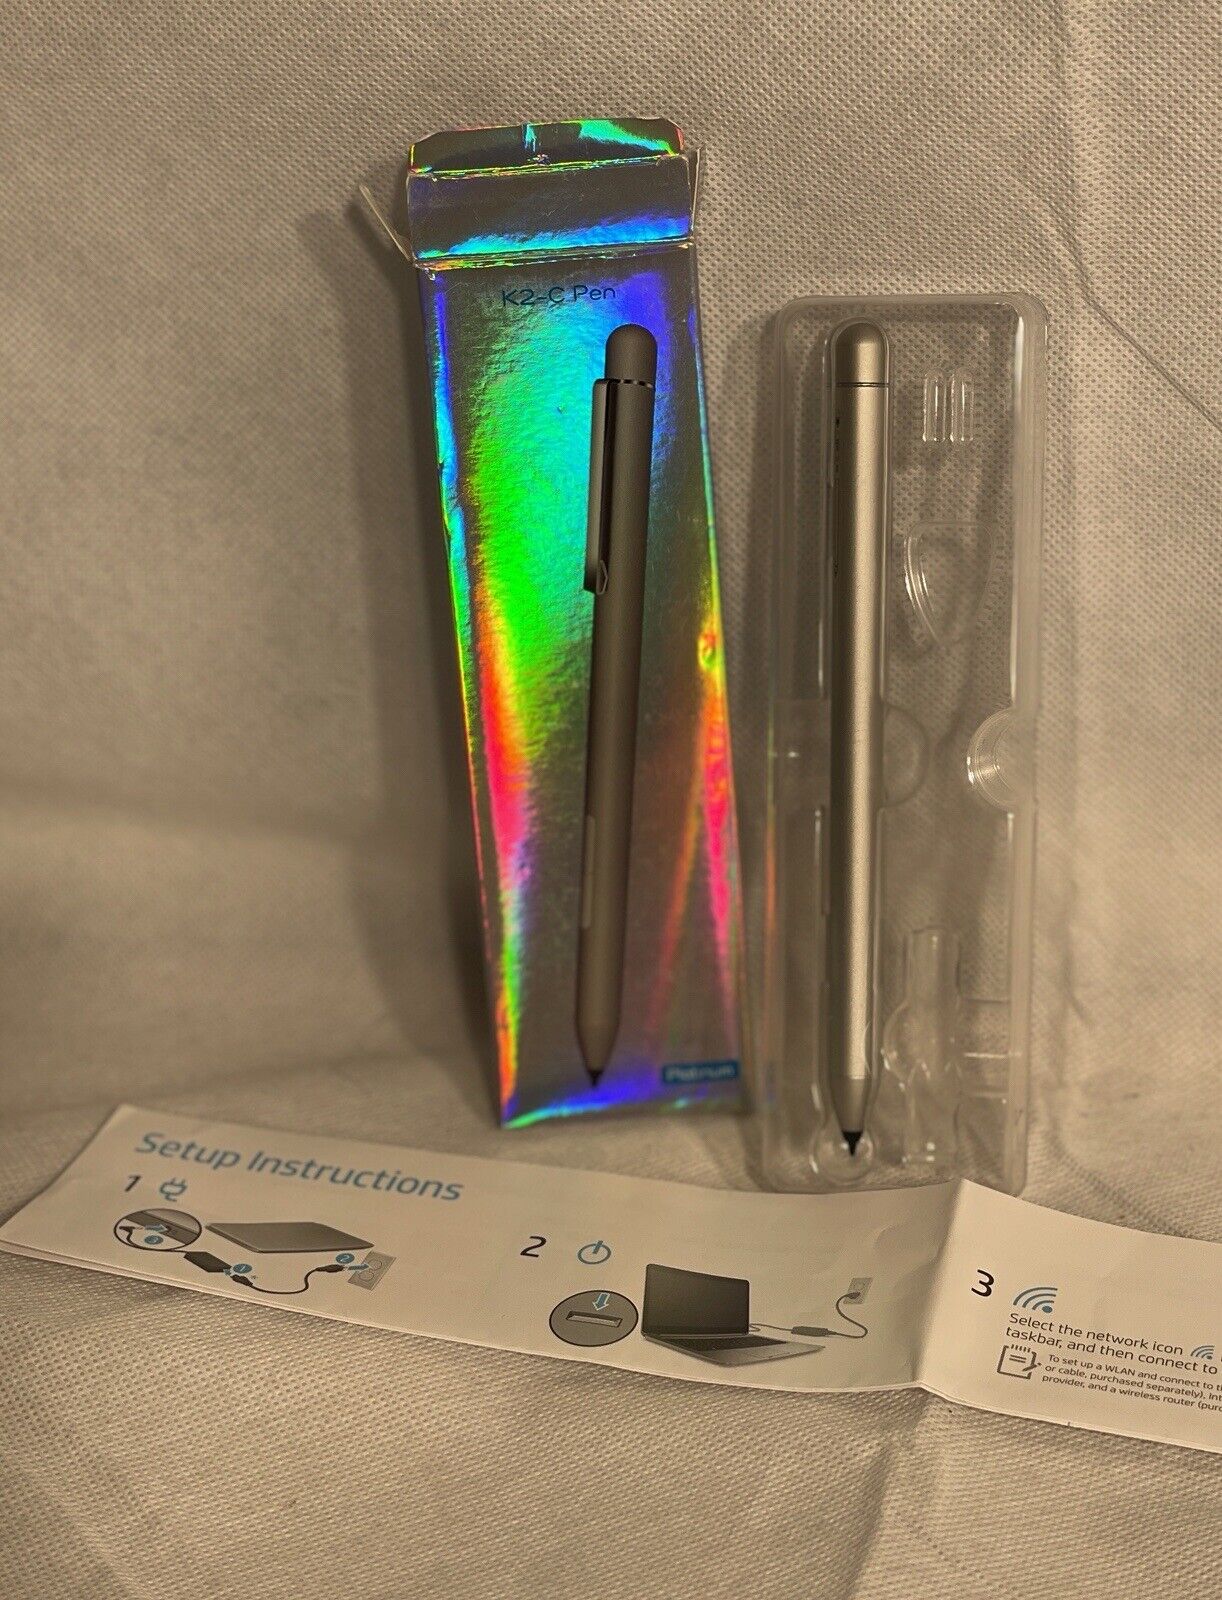 K2-C Pen Surface Pen Active Stylus Silver Open Box